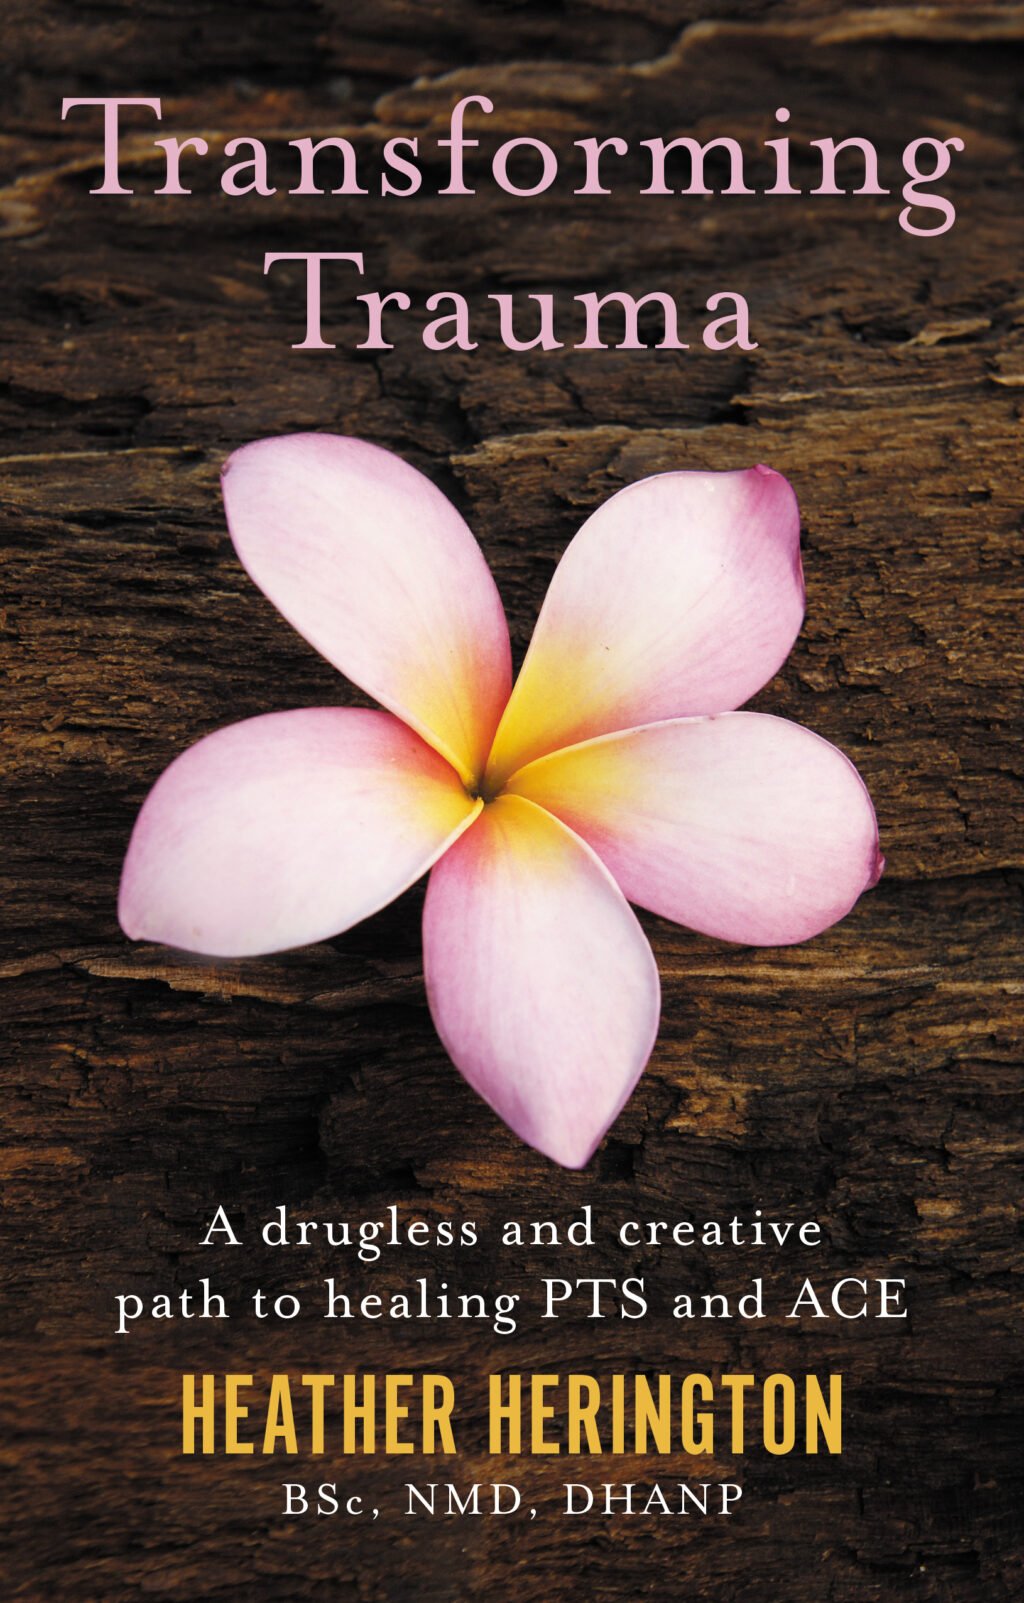 The Transforming Trauma cover